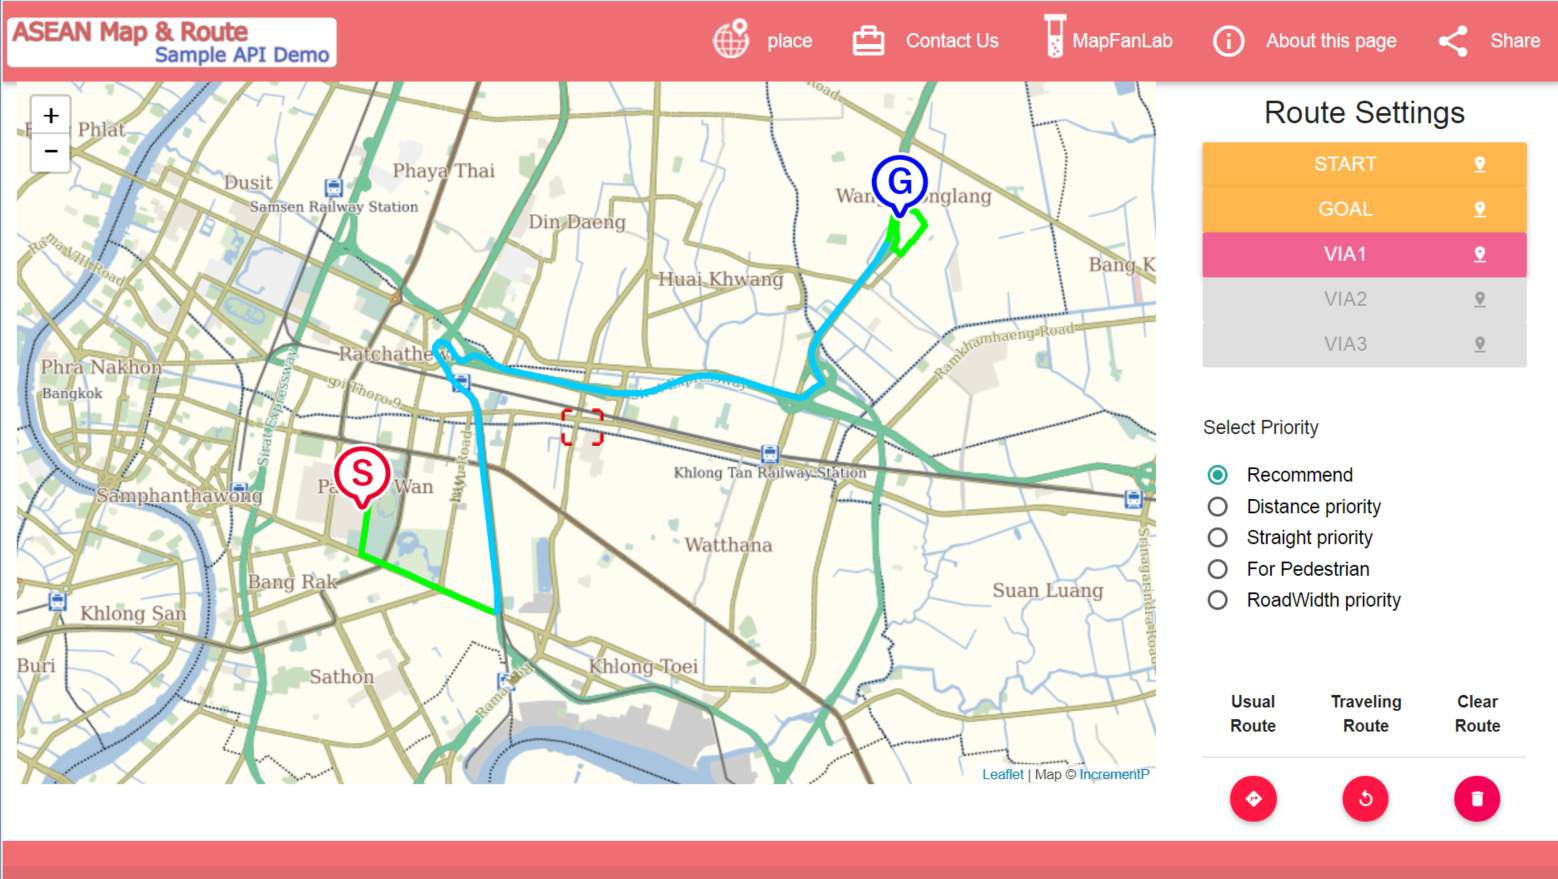 位置情報コンテンツ満載のショールーム Mapfan ラボサイト Asean Map Route 駐車場まとめて検索 を公開 インクリメントｐ株式会社のプレスリリース